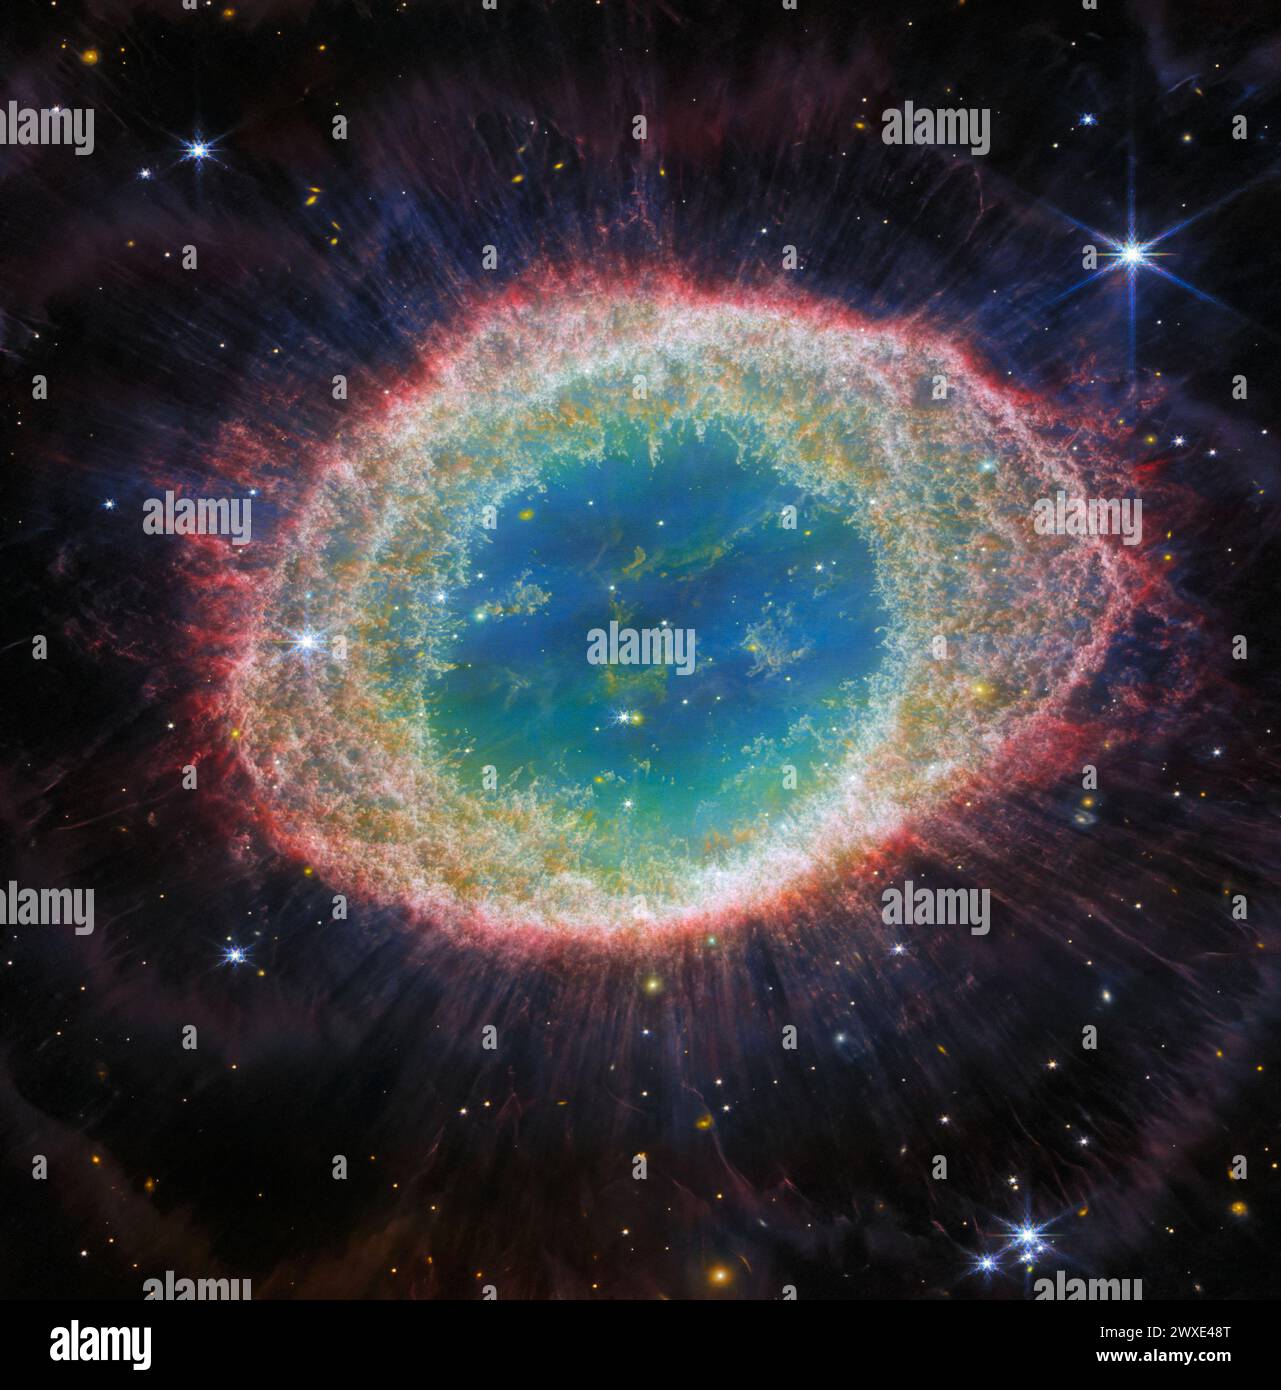 Le télescope spatial James Webb NASA/ESA/CSA a observé la célèbre nébuleuse annulaire avec des détails sans précédent. Formée par une étoile qui jette ses couches extérieures à court de carburant, la nébuleuse annulaire est une nébuleuse planétaire archétypale. Aussi connu sous le nom de M57 et NGC 6720, il est relativement proche de la Terre à environ 2 500 années-lumière de distance. Cette nouvelle image offre une résolution spatiale et une sensibilité spectrale sans précédent. La région intérieure de l'anneau comporte des éléments filamenteux distincts. CRÉDIT : NASA/ESA/CSA Banque D'Images